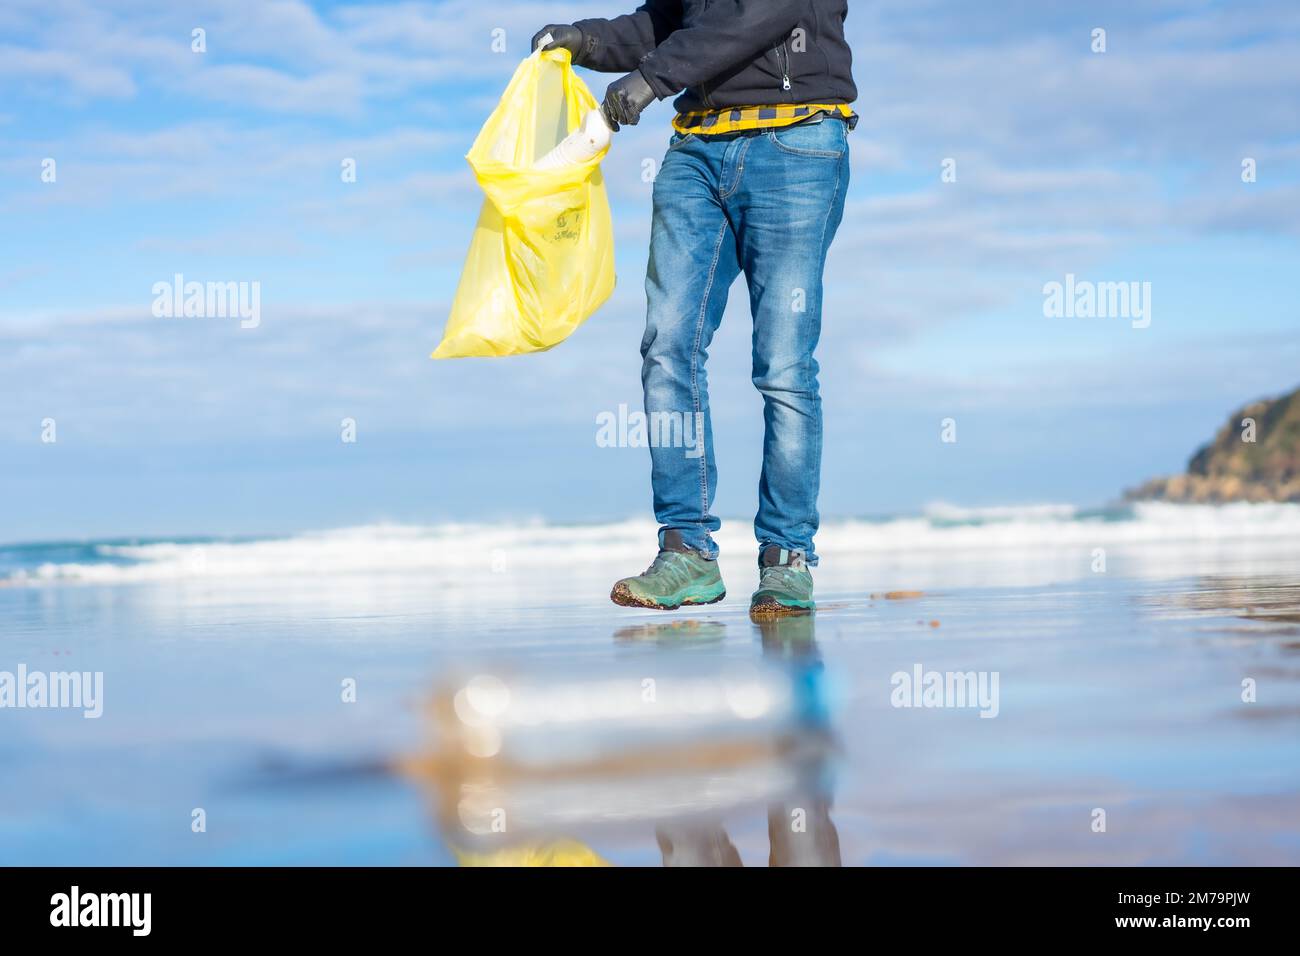 Meeresverschmutzung, nicht erkennbare Person, die Müll und Plastik am Strand sammelt. Ökologiekonzept Stockfoto